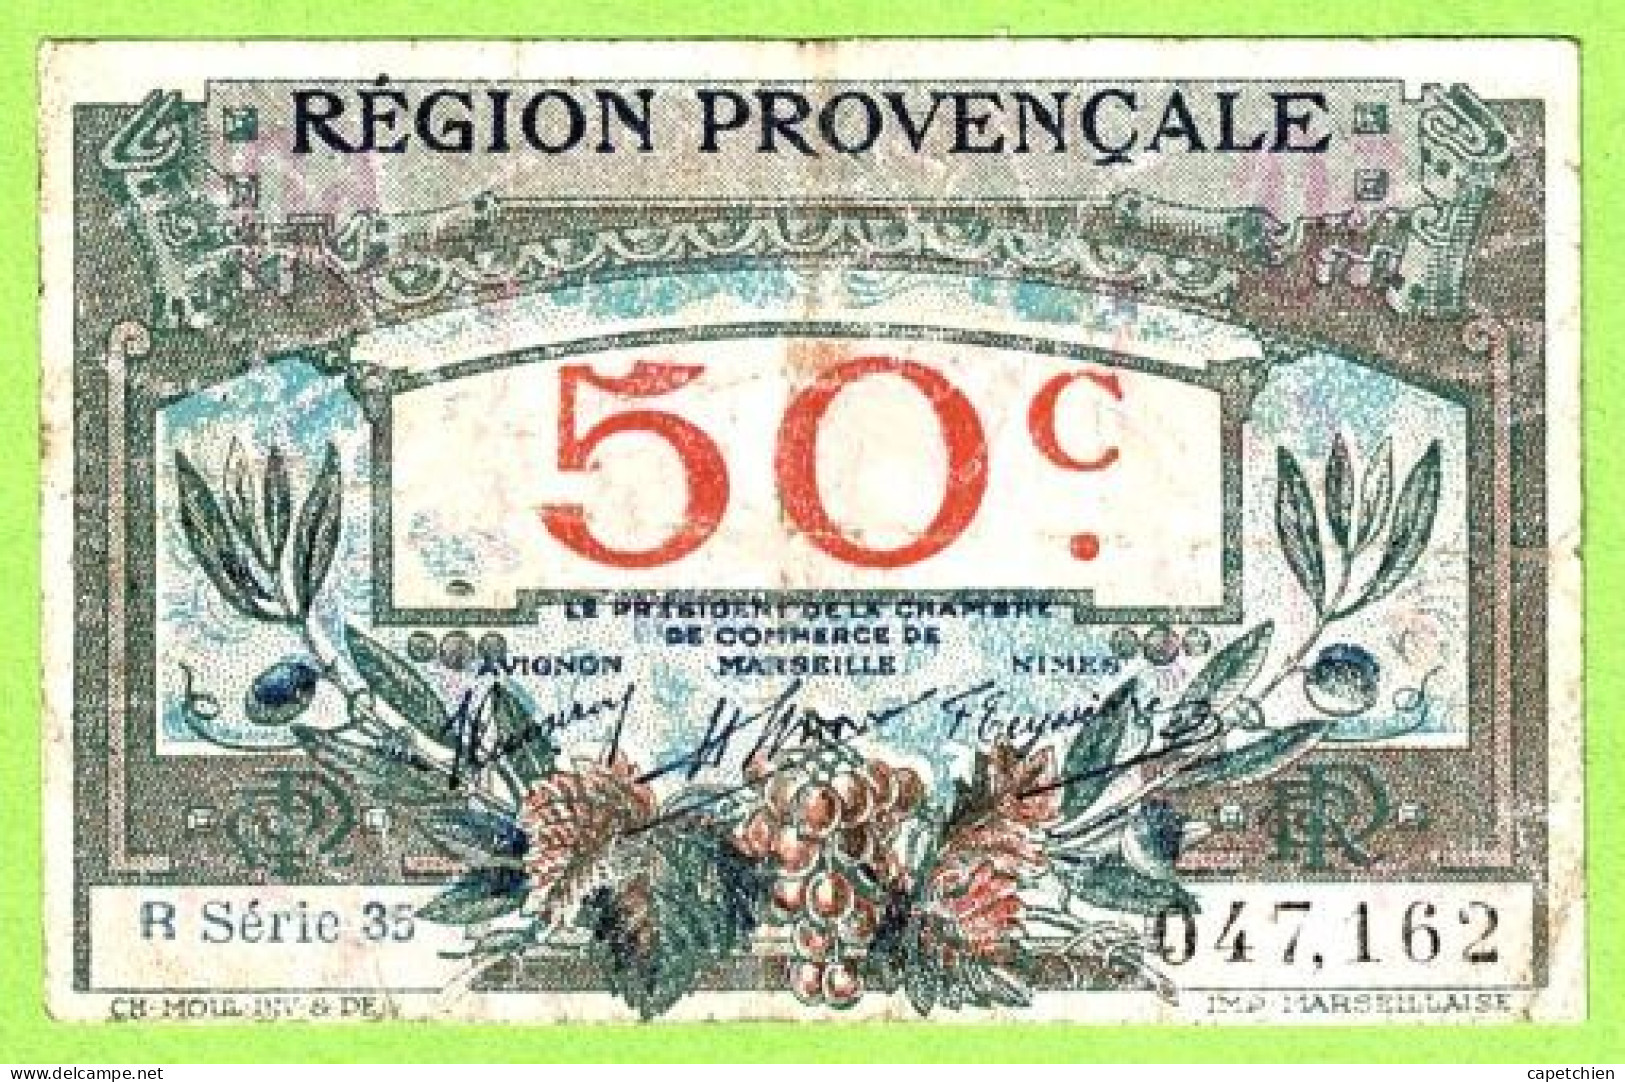 FRANCE / CHAMBRE De COMMERCE / REGION PROVENCALE / 50 CENTIMES / 047162 / R  SERIE 35 - Chambre De Commerce